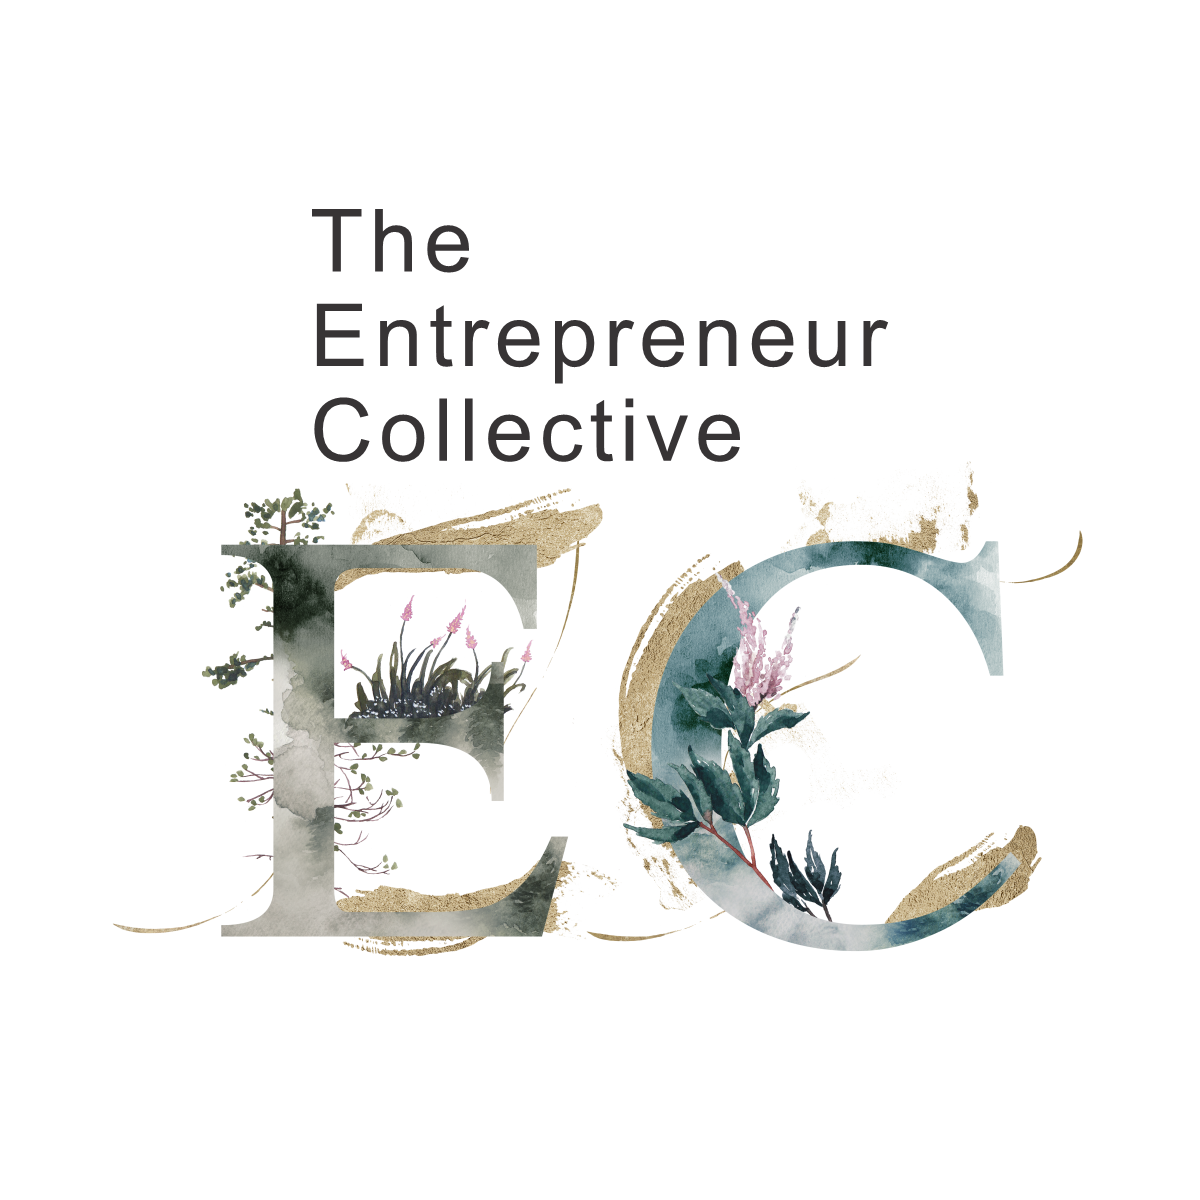 The Entrepreneur Collective